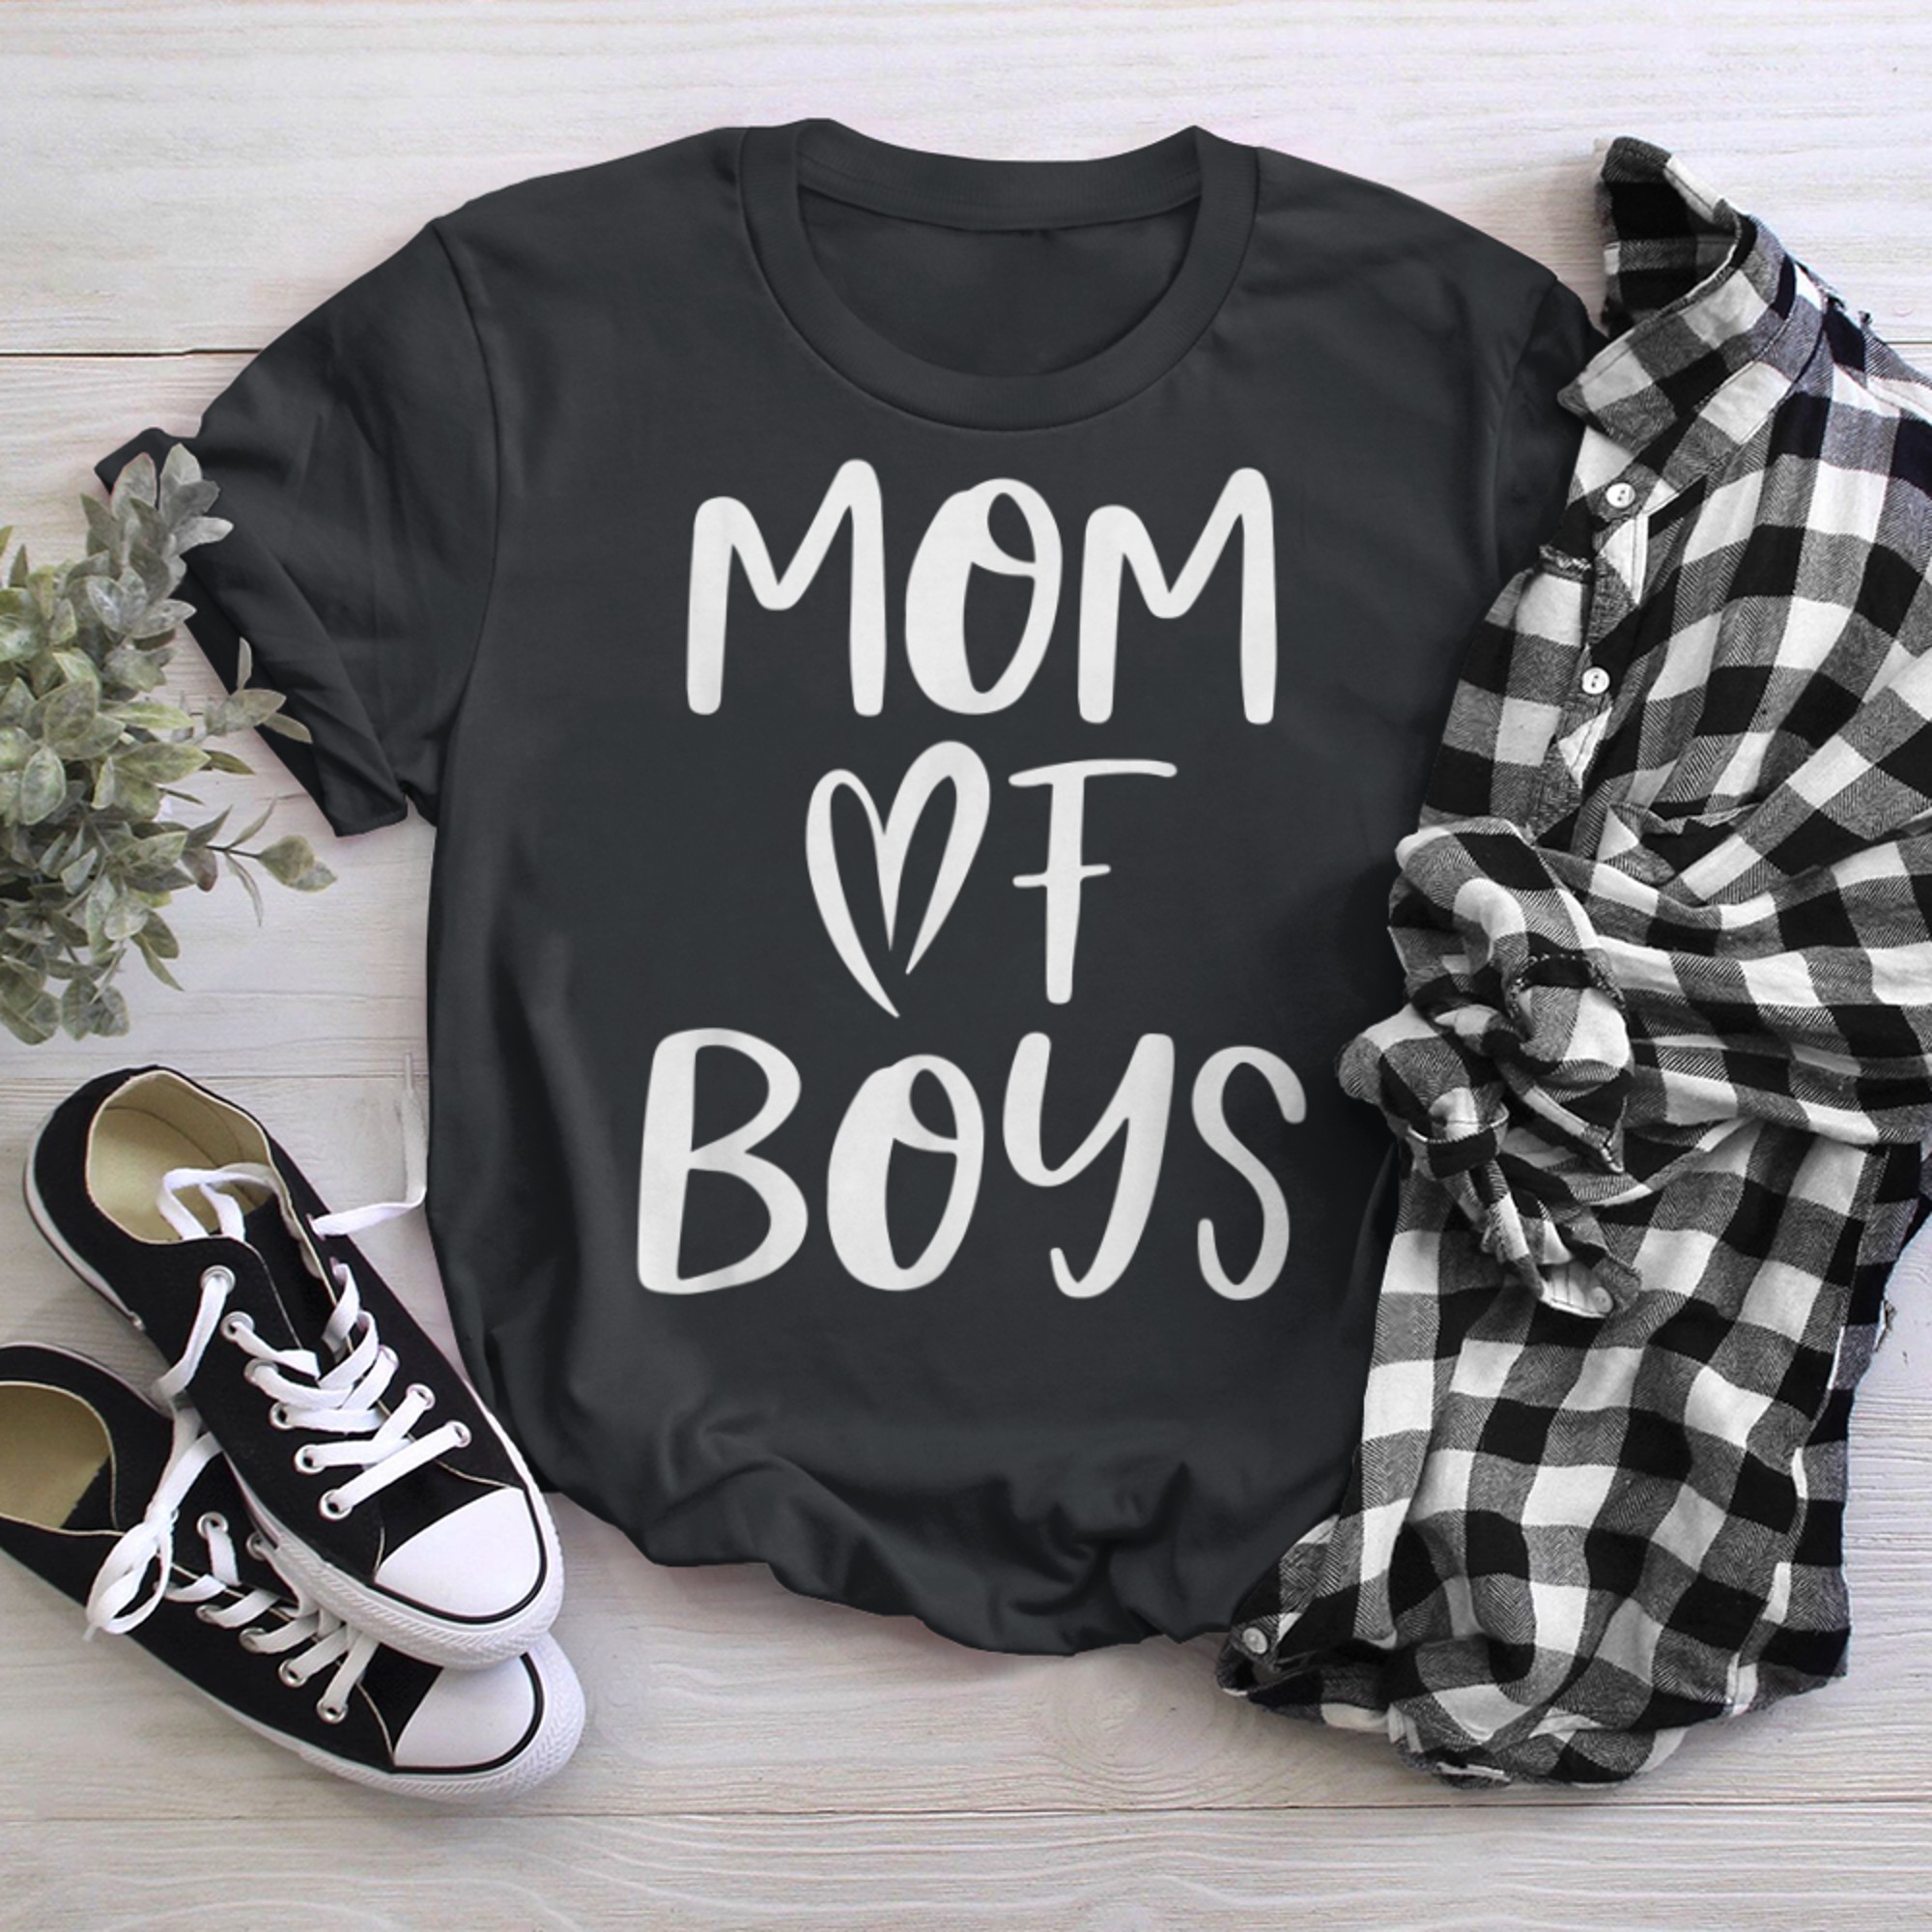 Mom Of for - Cute White Heart Design t-shirt black